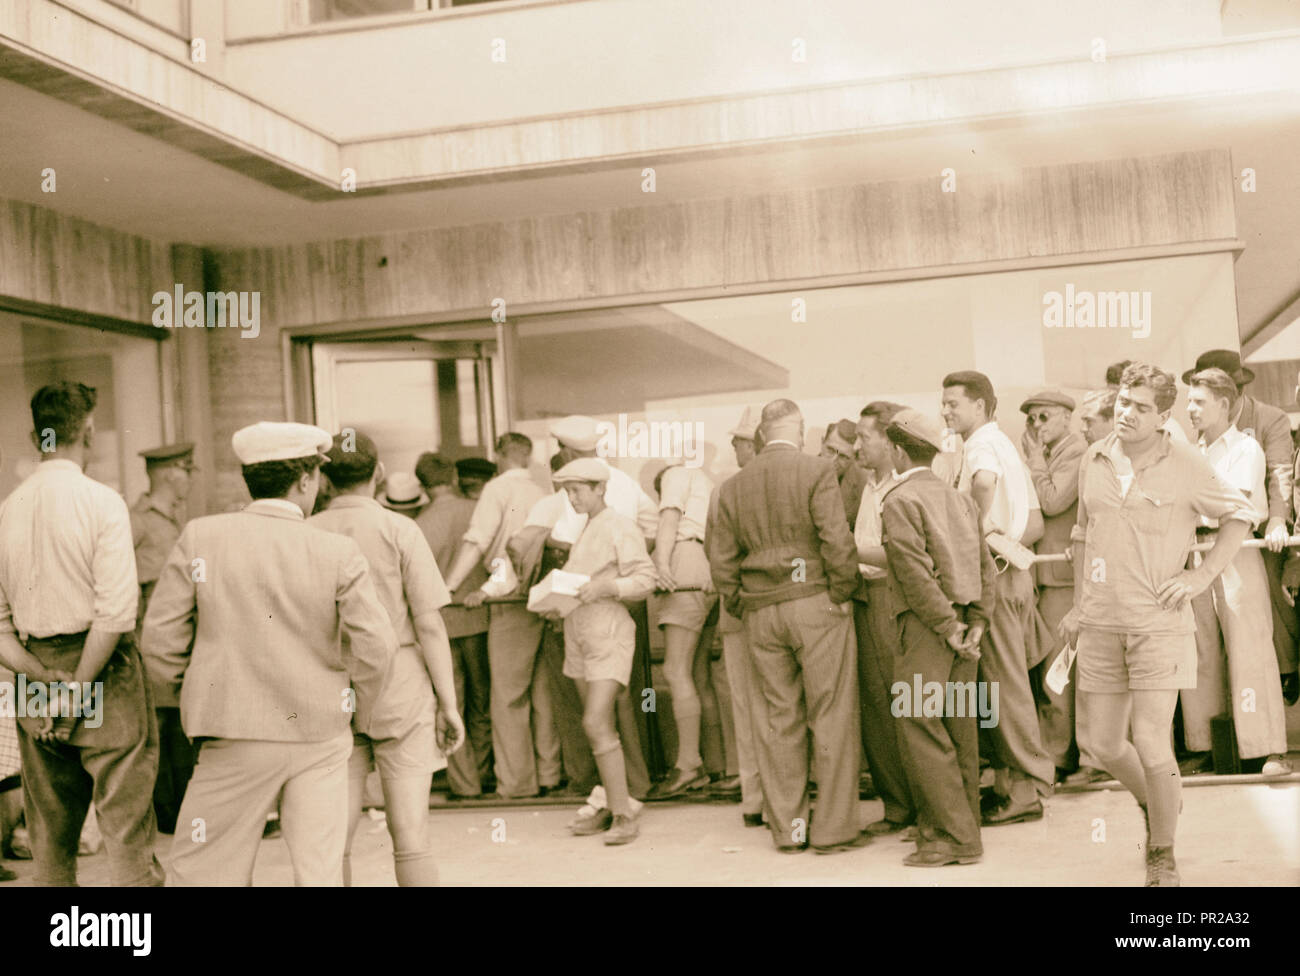 Jüdische Chauffeure usw. in der langen Warteschlange in Tel Aviv ein [c] quiring Lizenzen (?). 1939, Israel, Tel Aviv Stockfoto